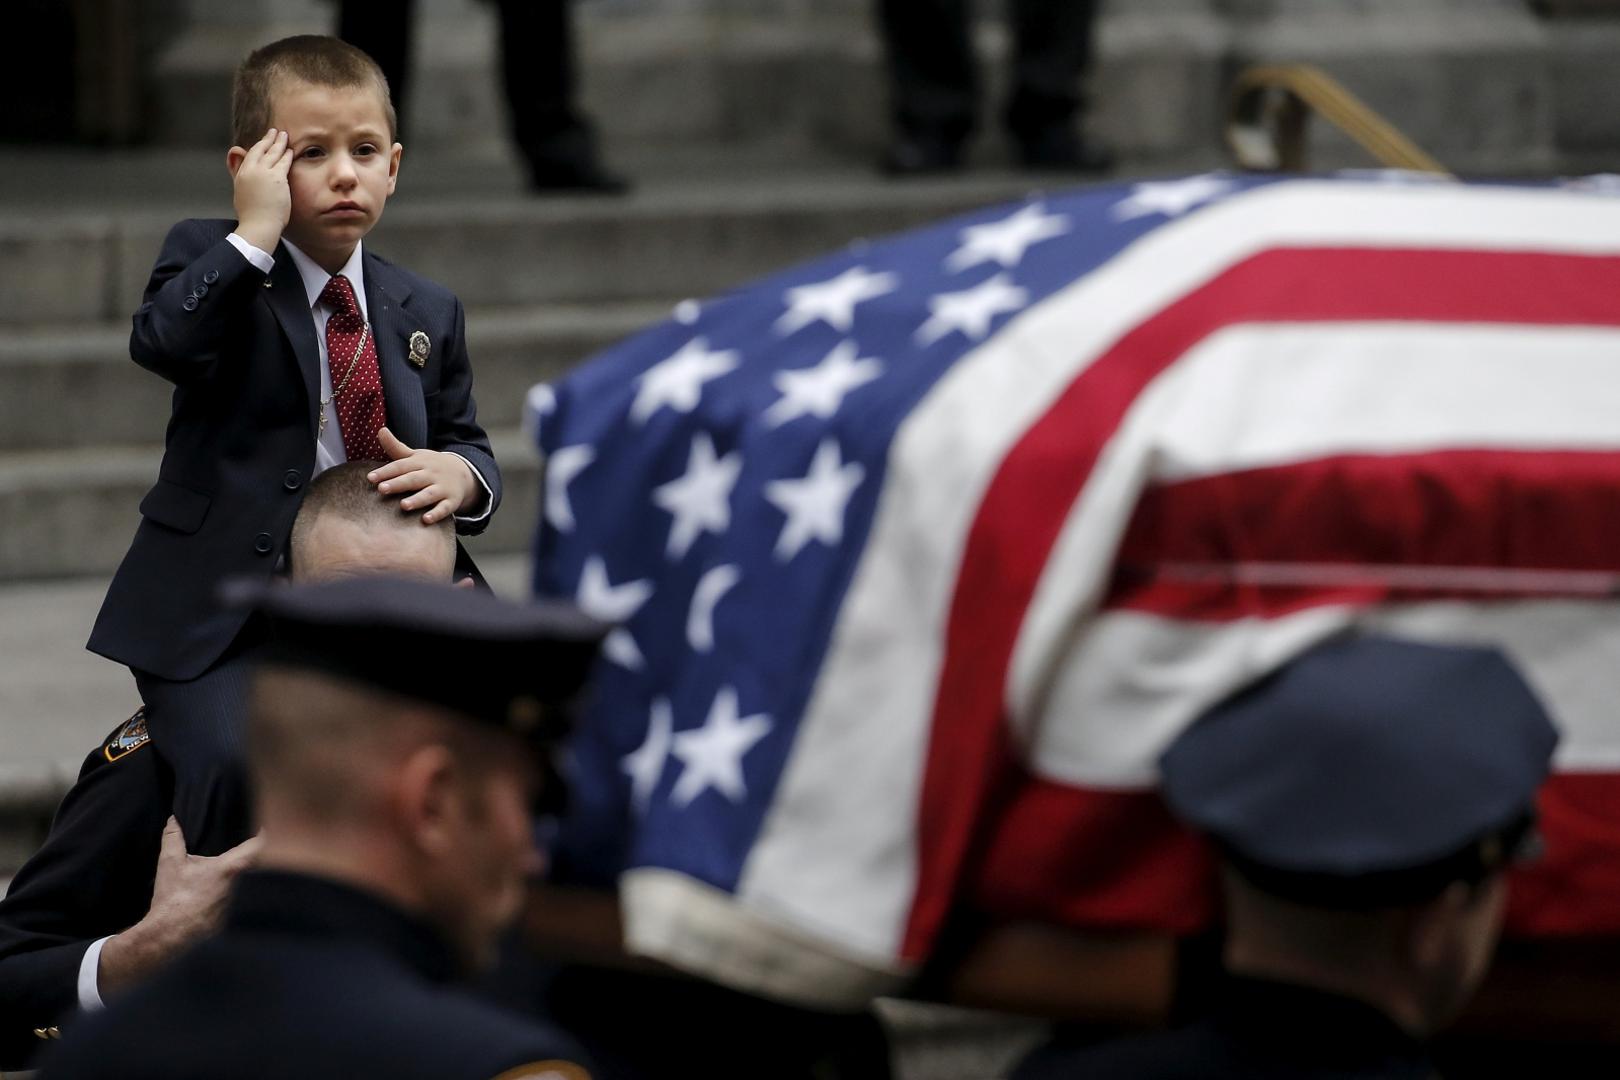 Sin palog
američkog borca na pogrebu
svoga oca